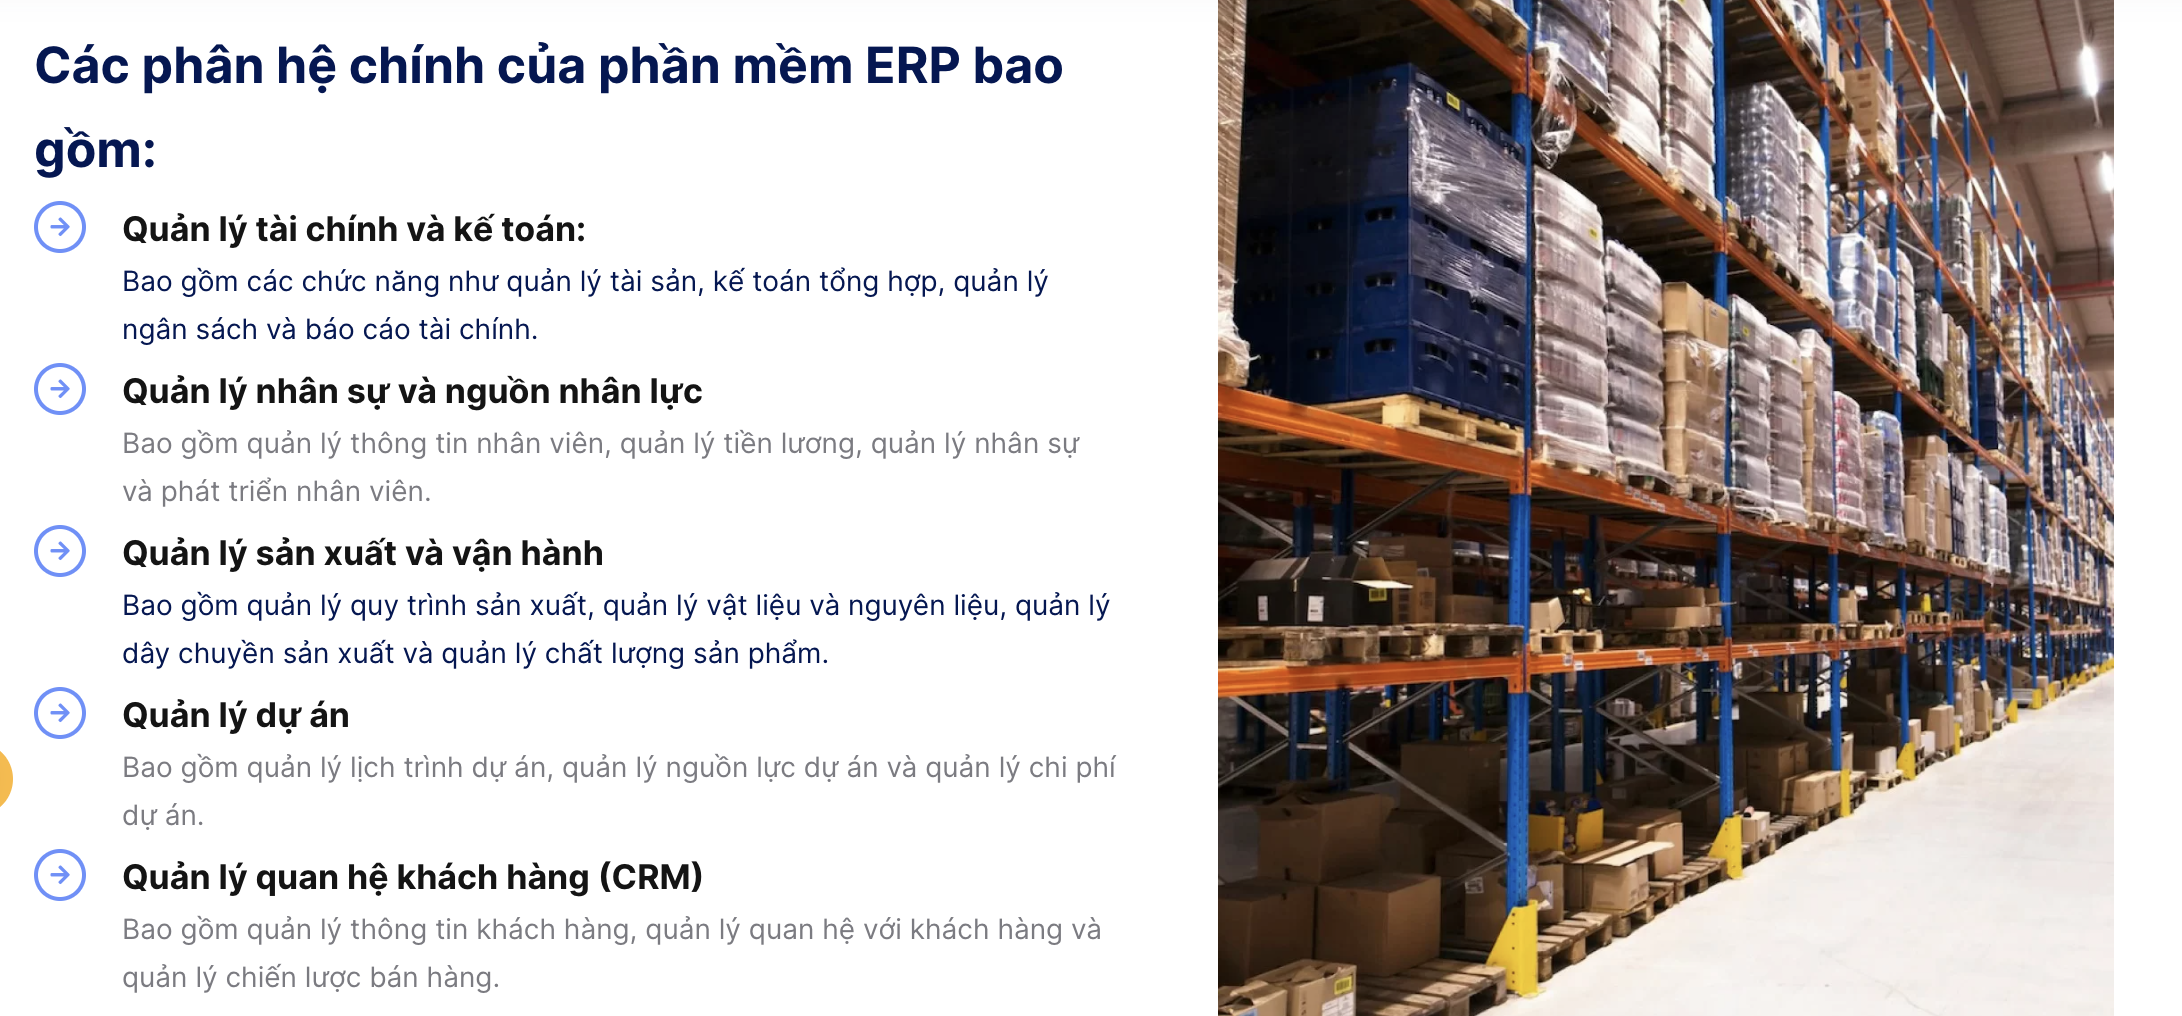 Phần mềm ERP cho doanh nghiệp vừa và nhỏ hiệu quả arito